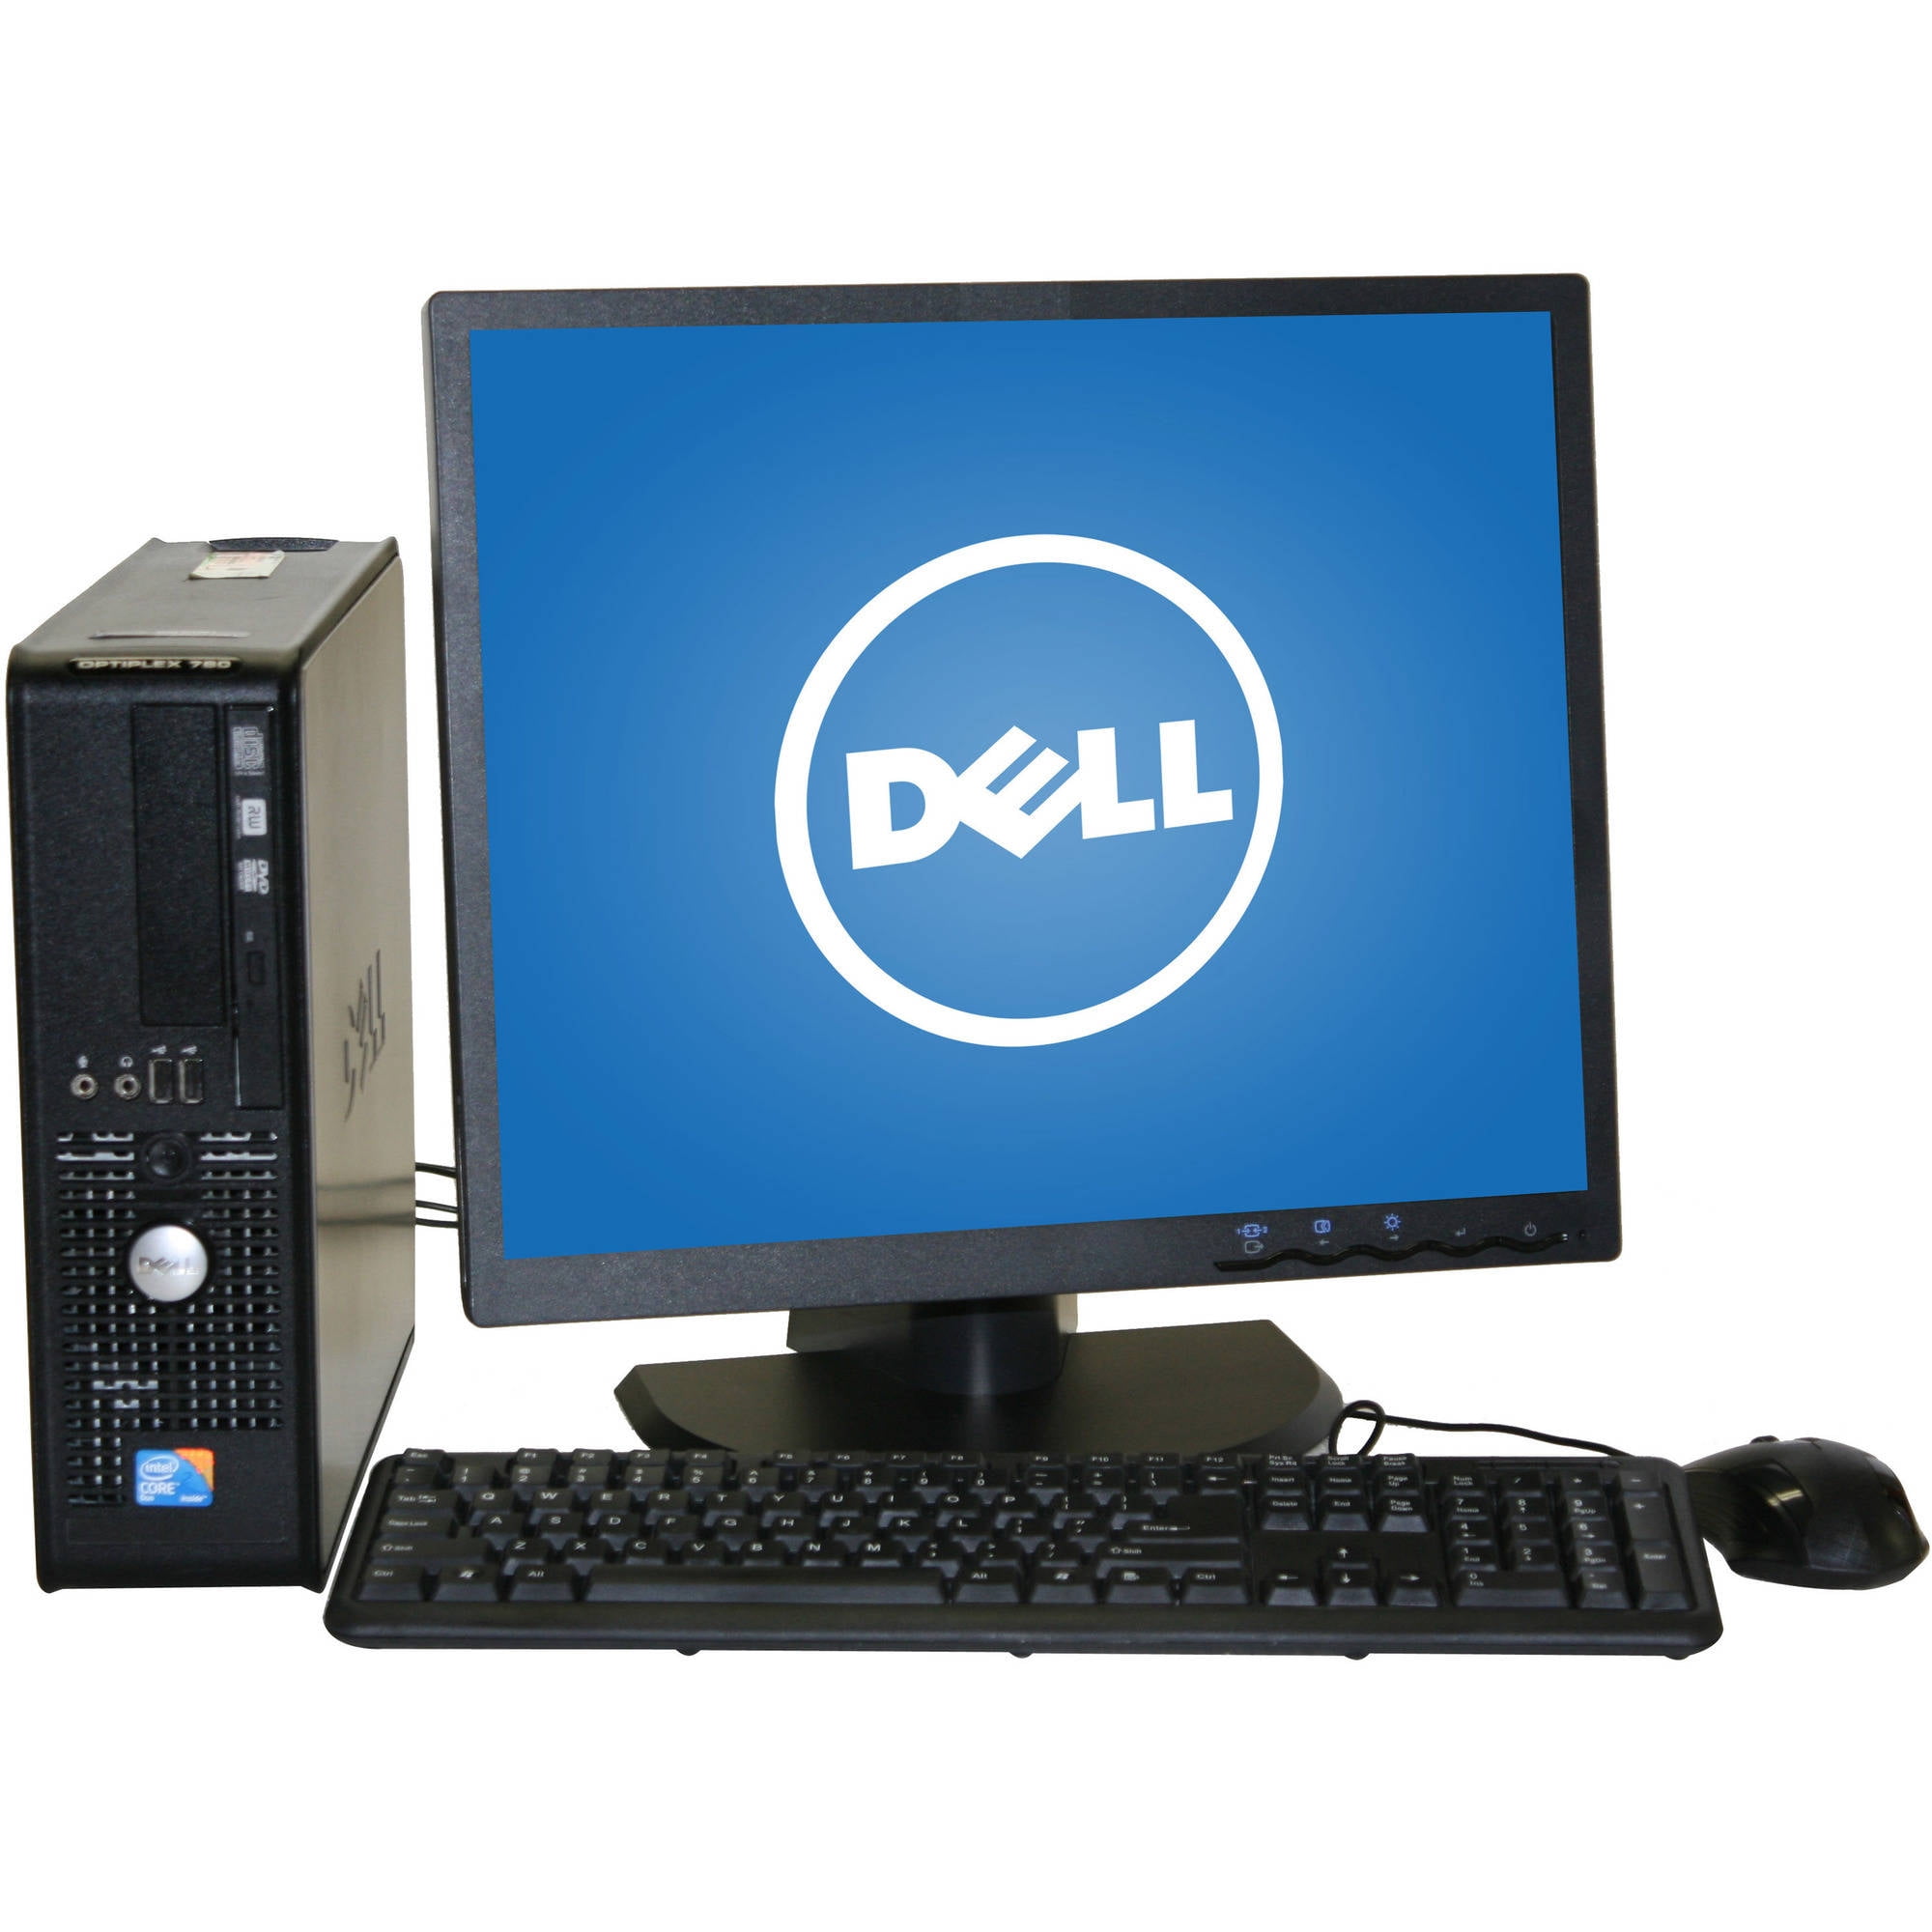 Restored Dell 780 Desktop PC with Intel Core 2 Duo Processor, 8GB Memory,  19